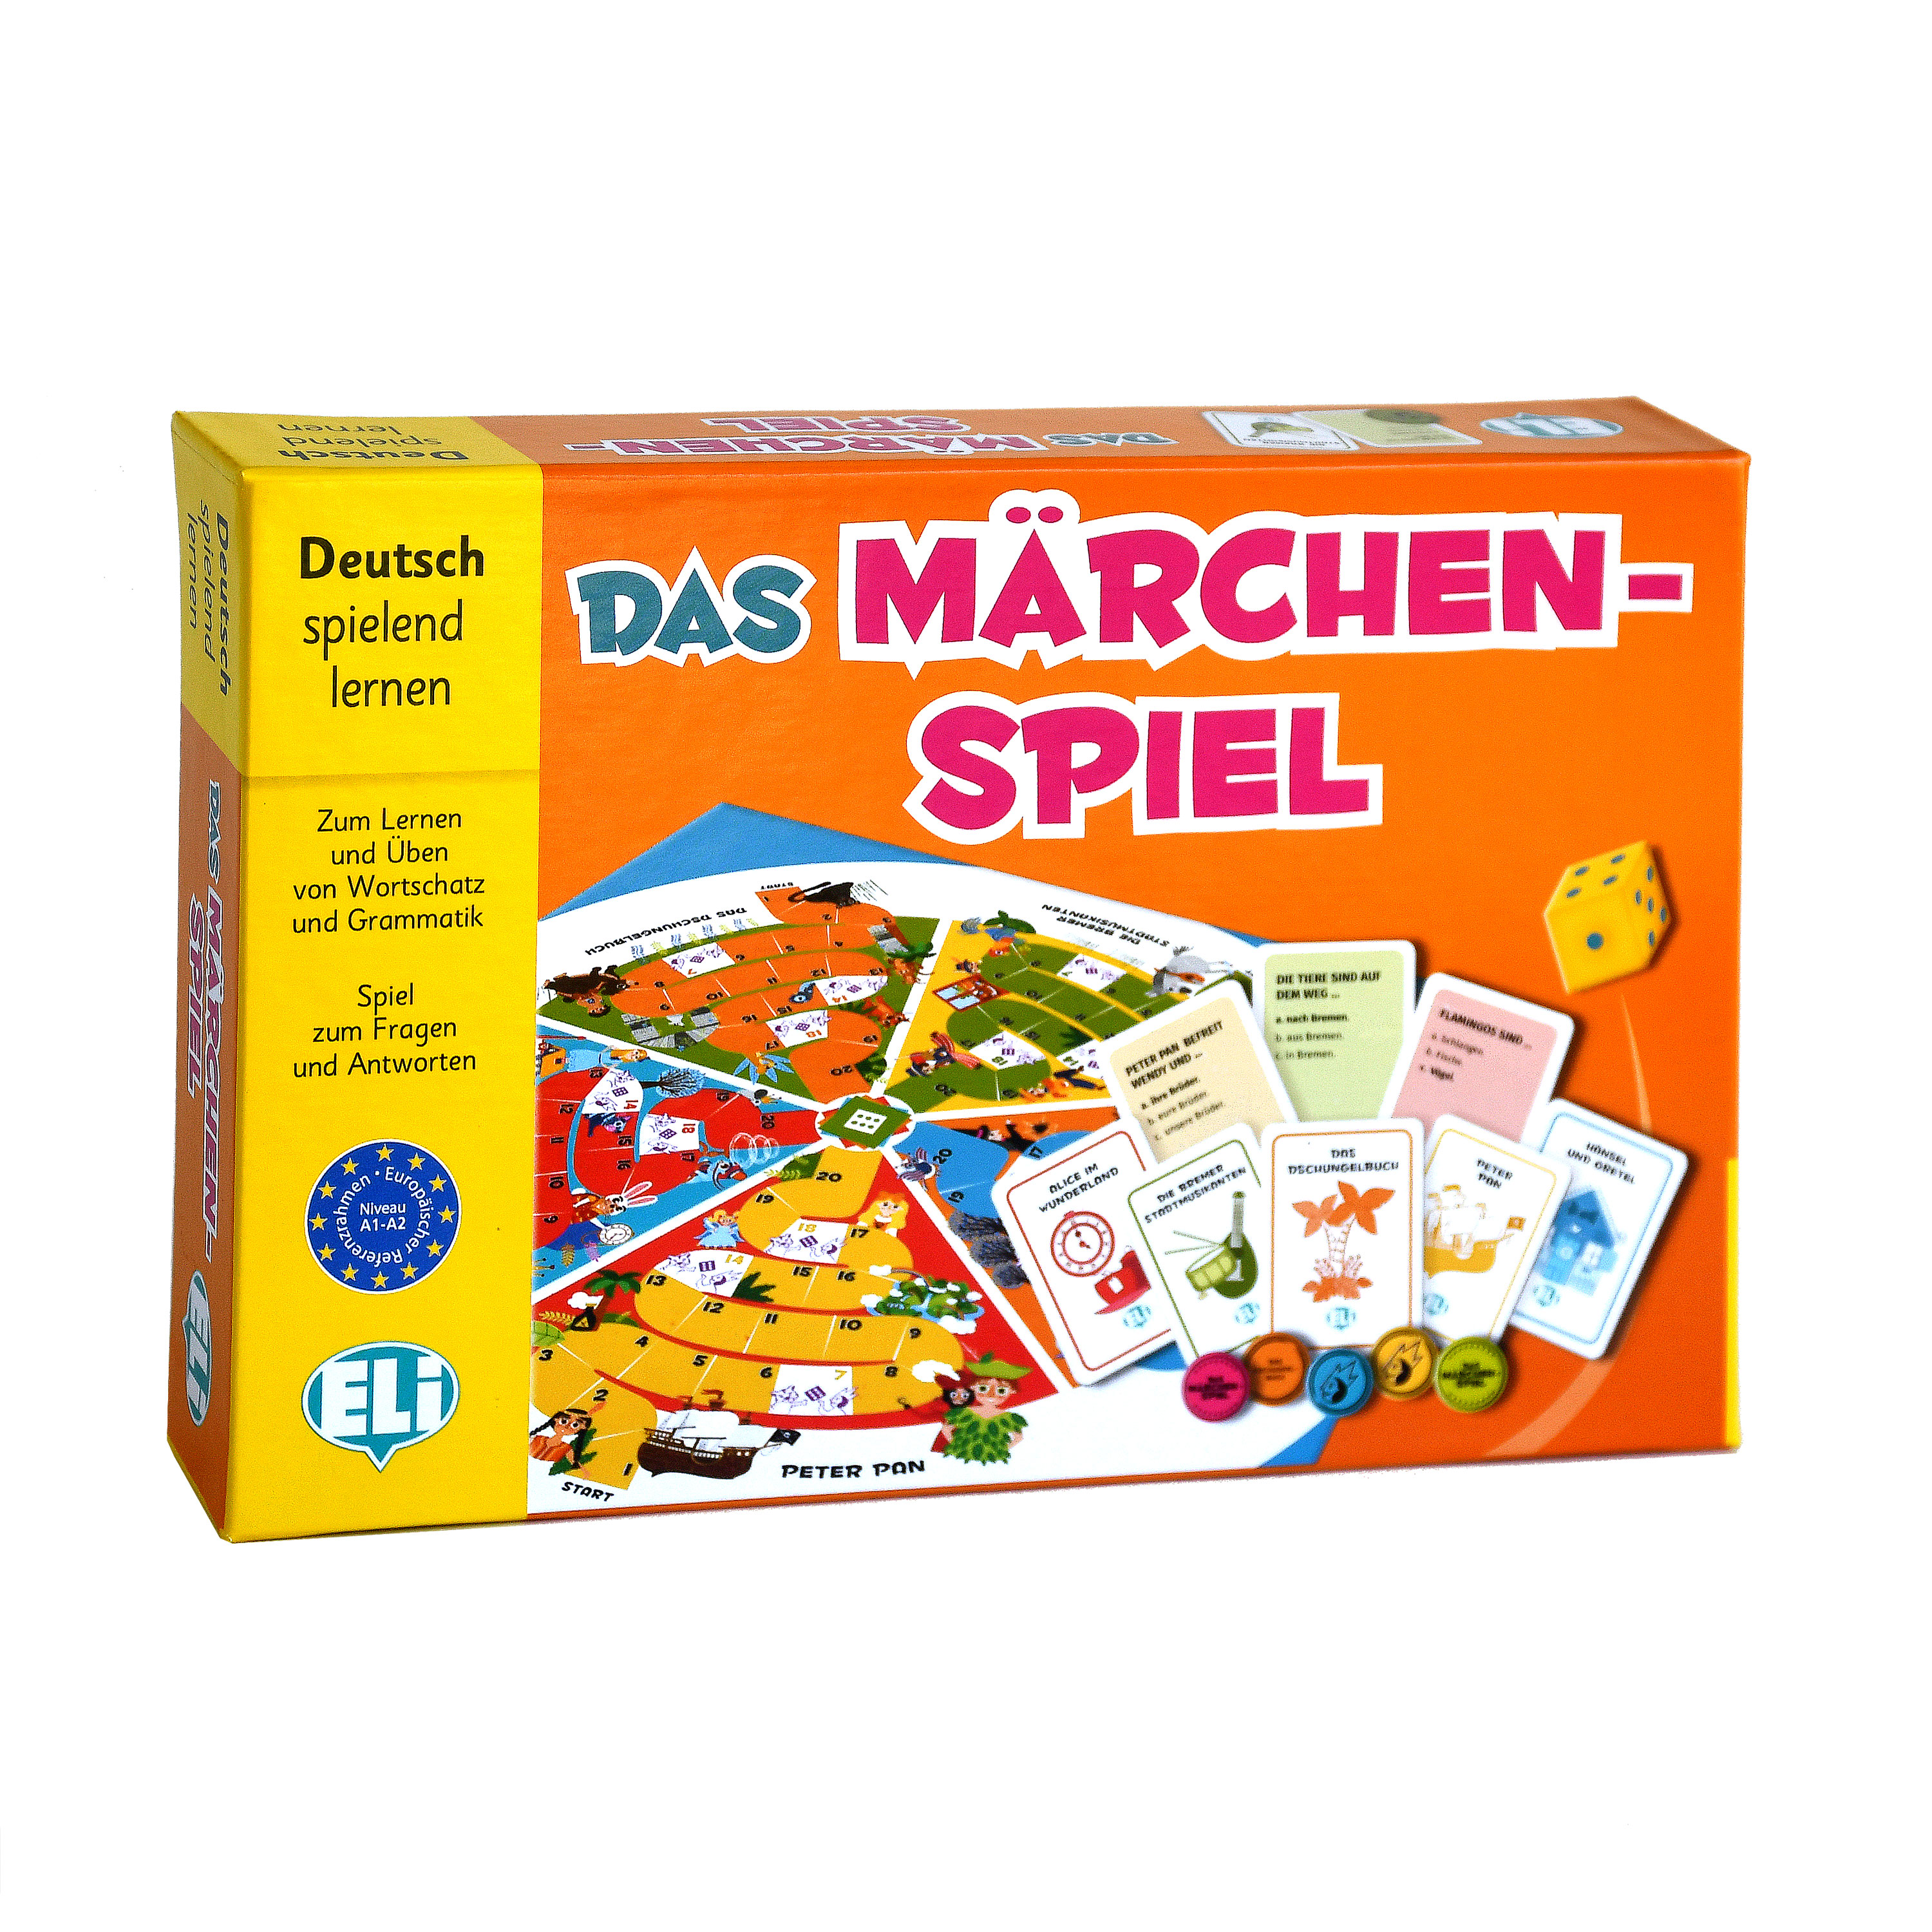 Das Märchen-Spiel German Game